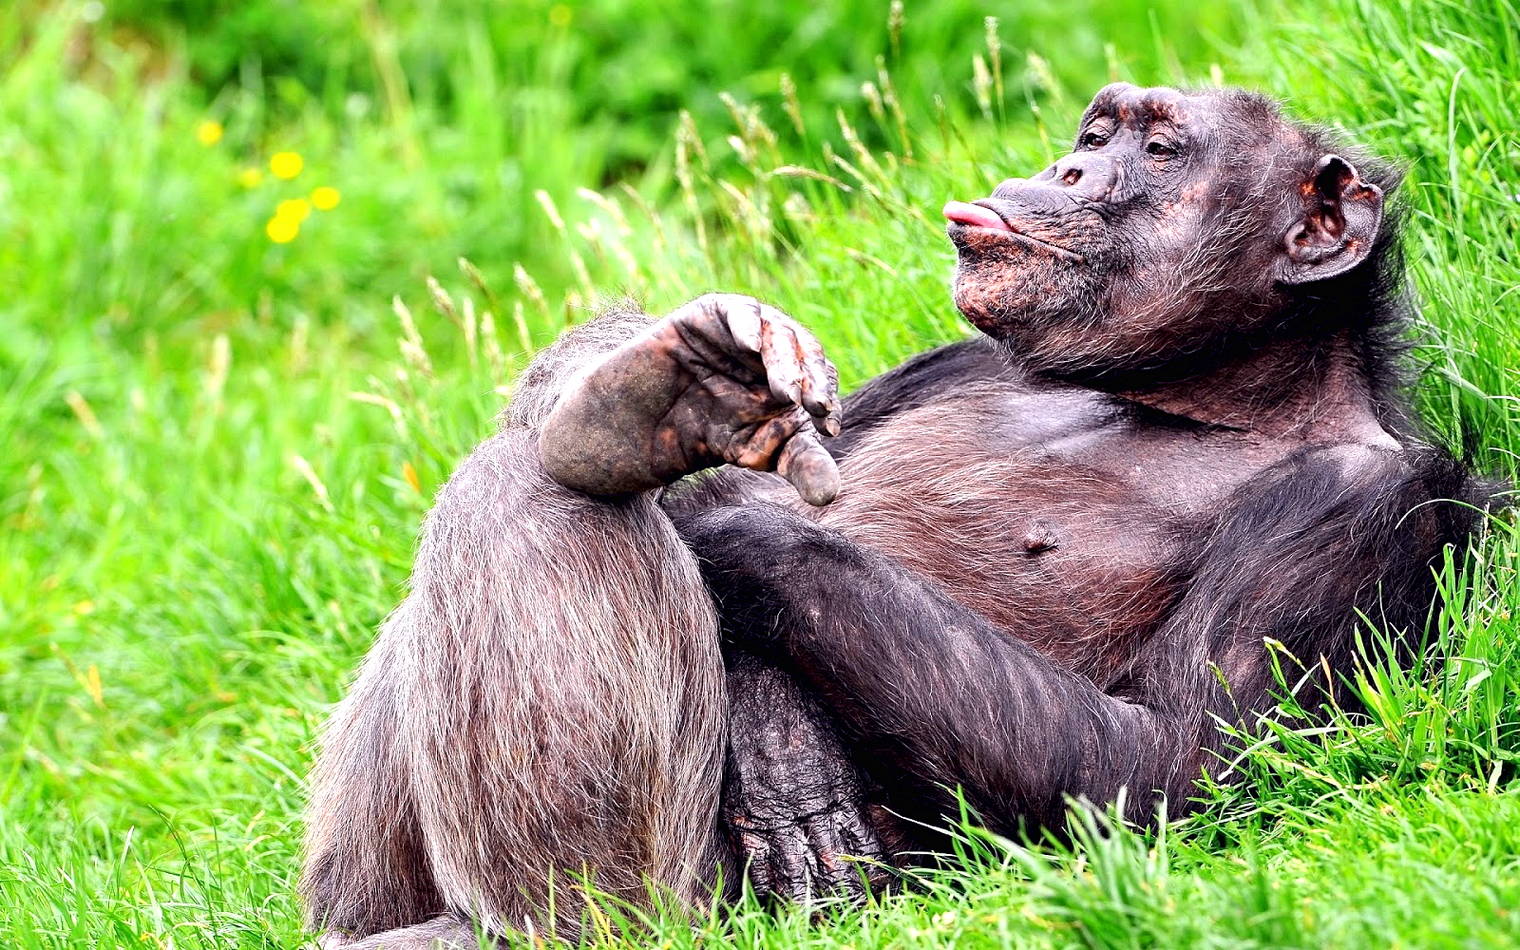 Kumpulan Gambar Lucu Monyet Harian Nusantara